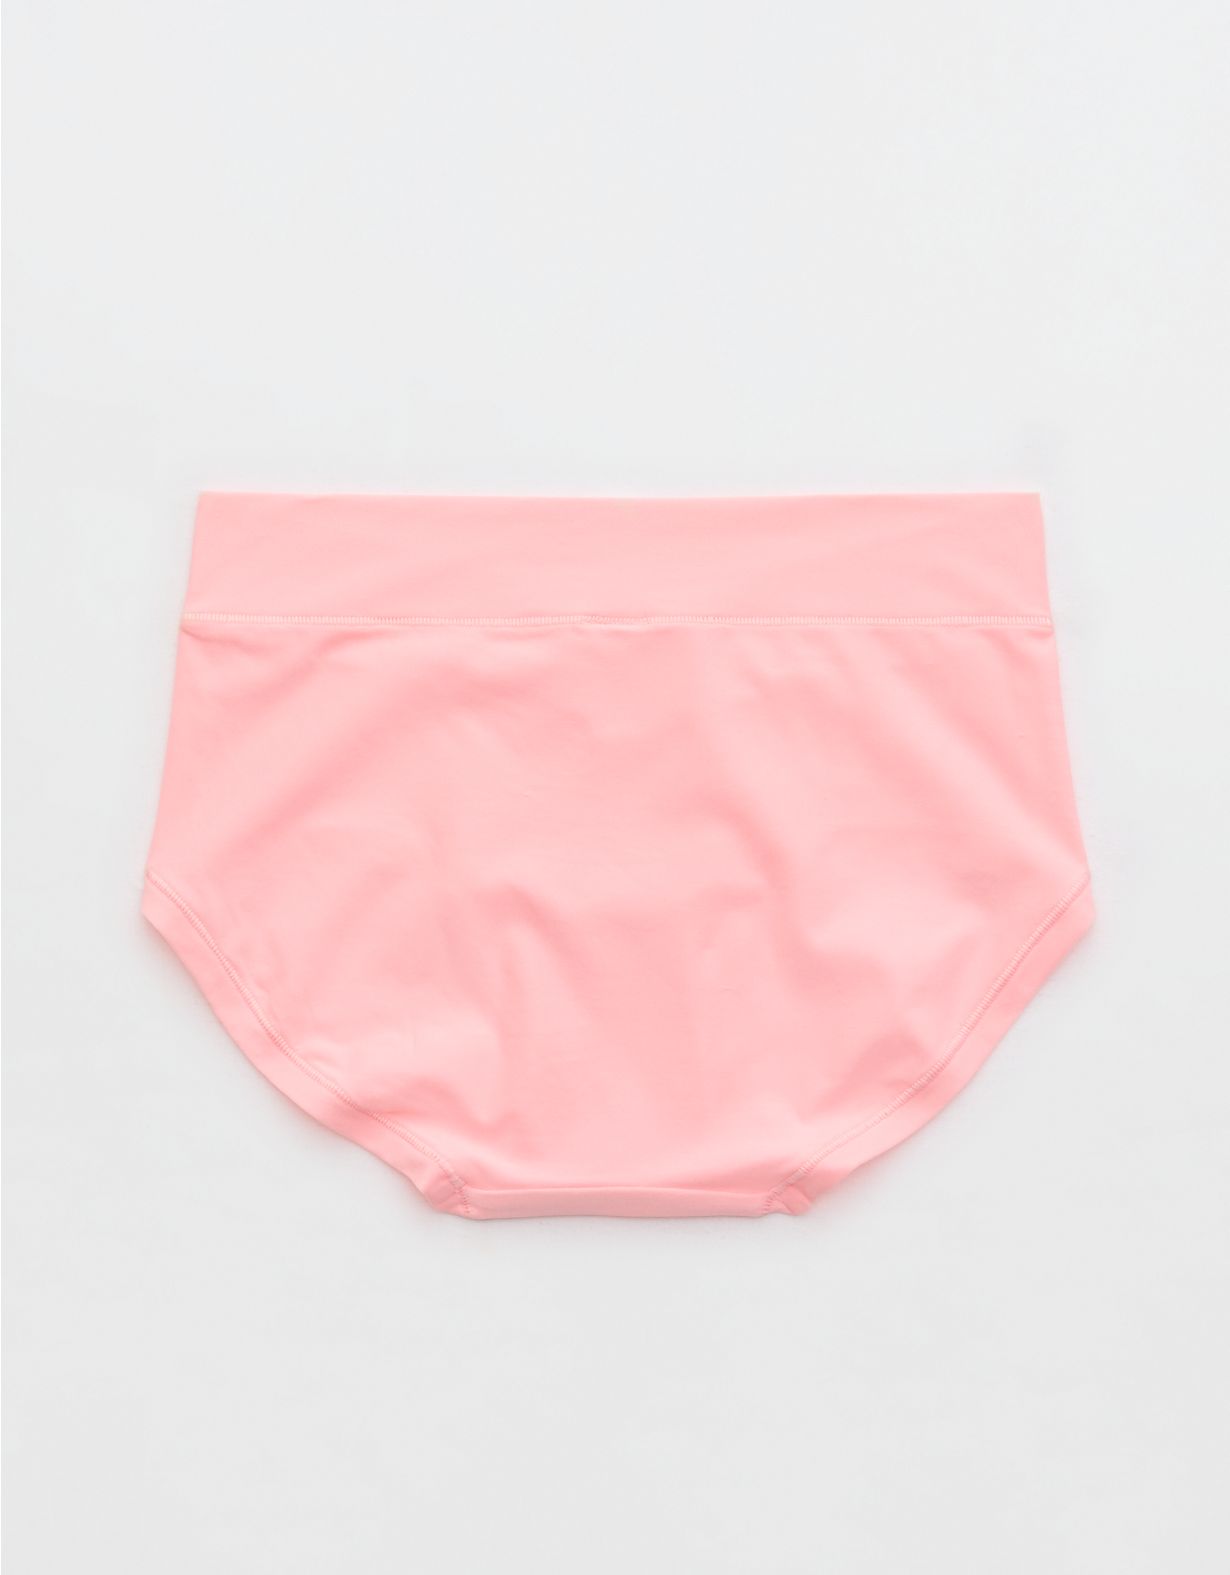 SMOOTHEZ Everyday Crossover Boybrief Underwear